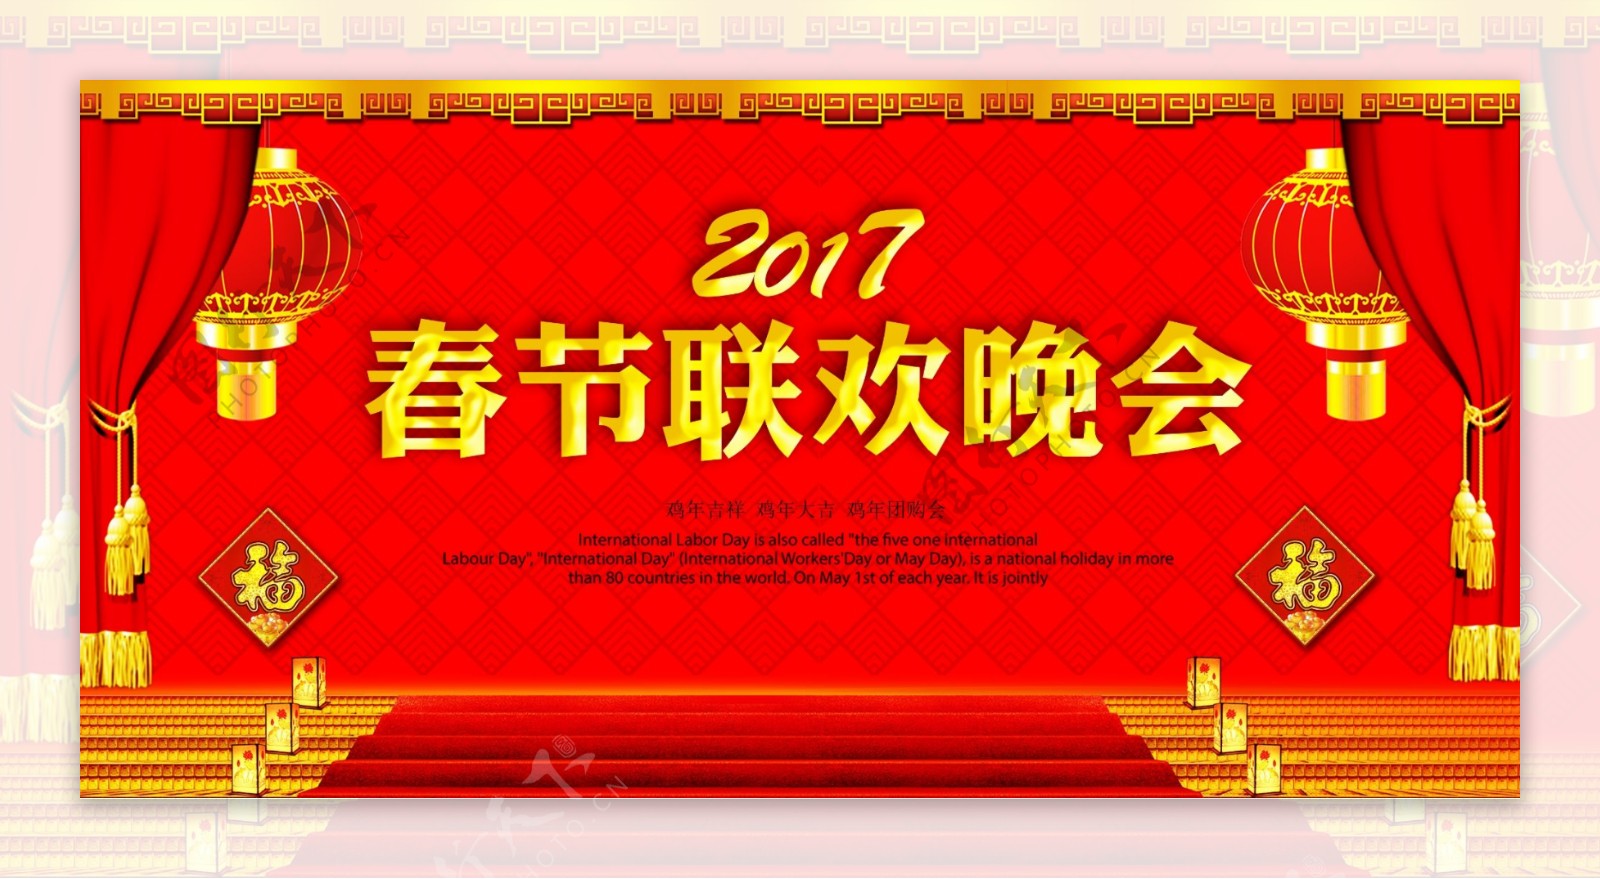 2017鸡年春节联欢晚会背景板